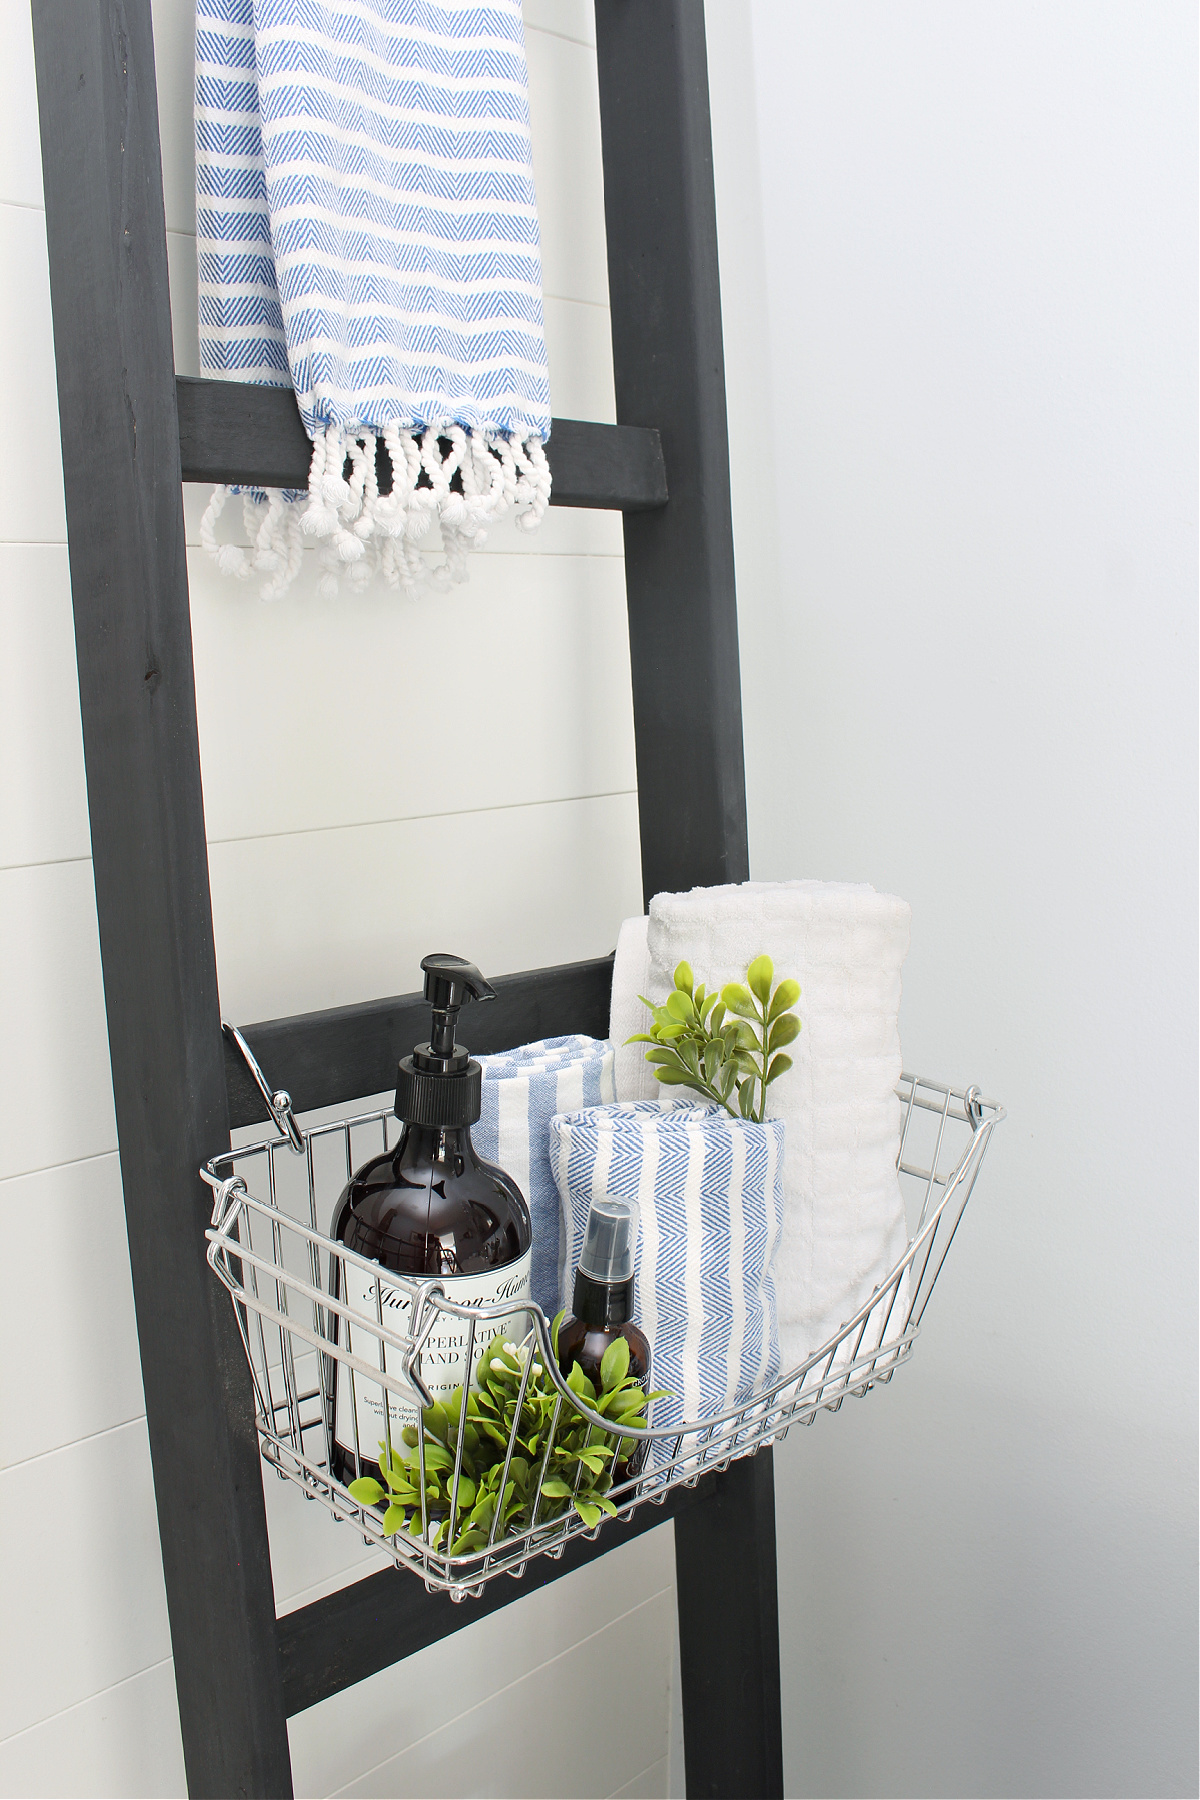 Black DIY bathroom storage ladder with wire baskets.